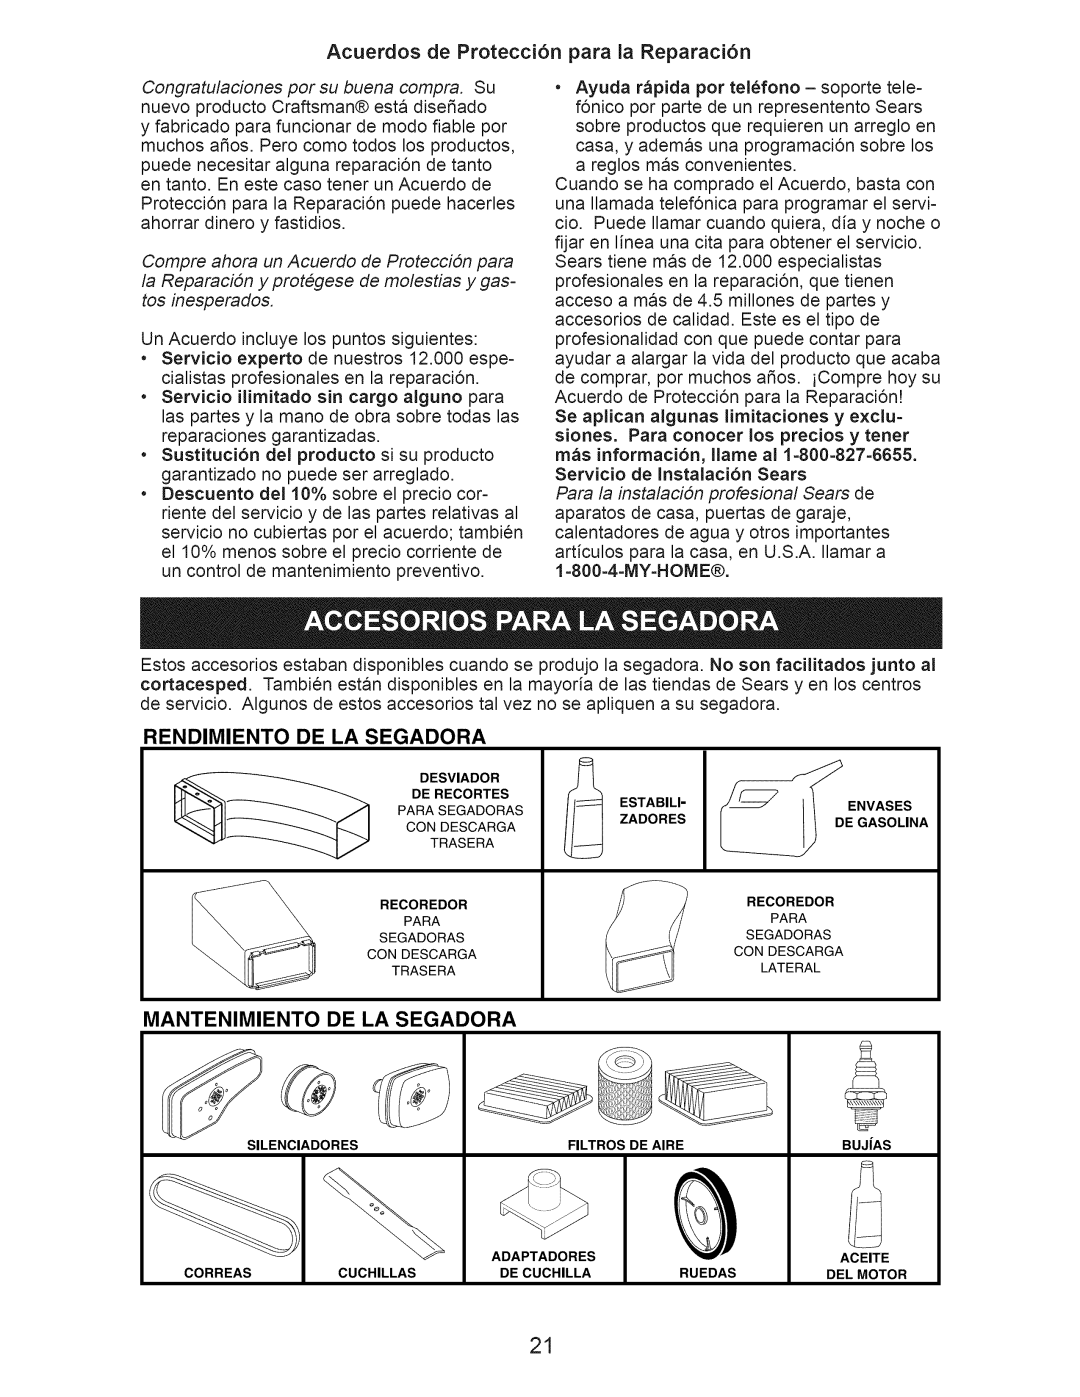 Craftsman 917.389051 manual Acuerdos de Protecci6n para la Reparaci6n, Rendimiento, De La Segadora, Mantenimiento 